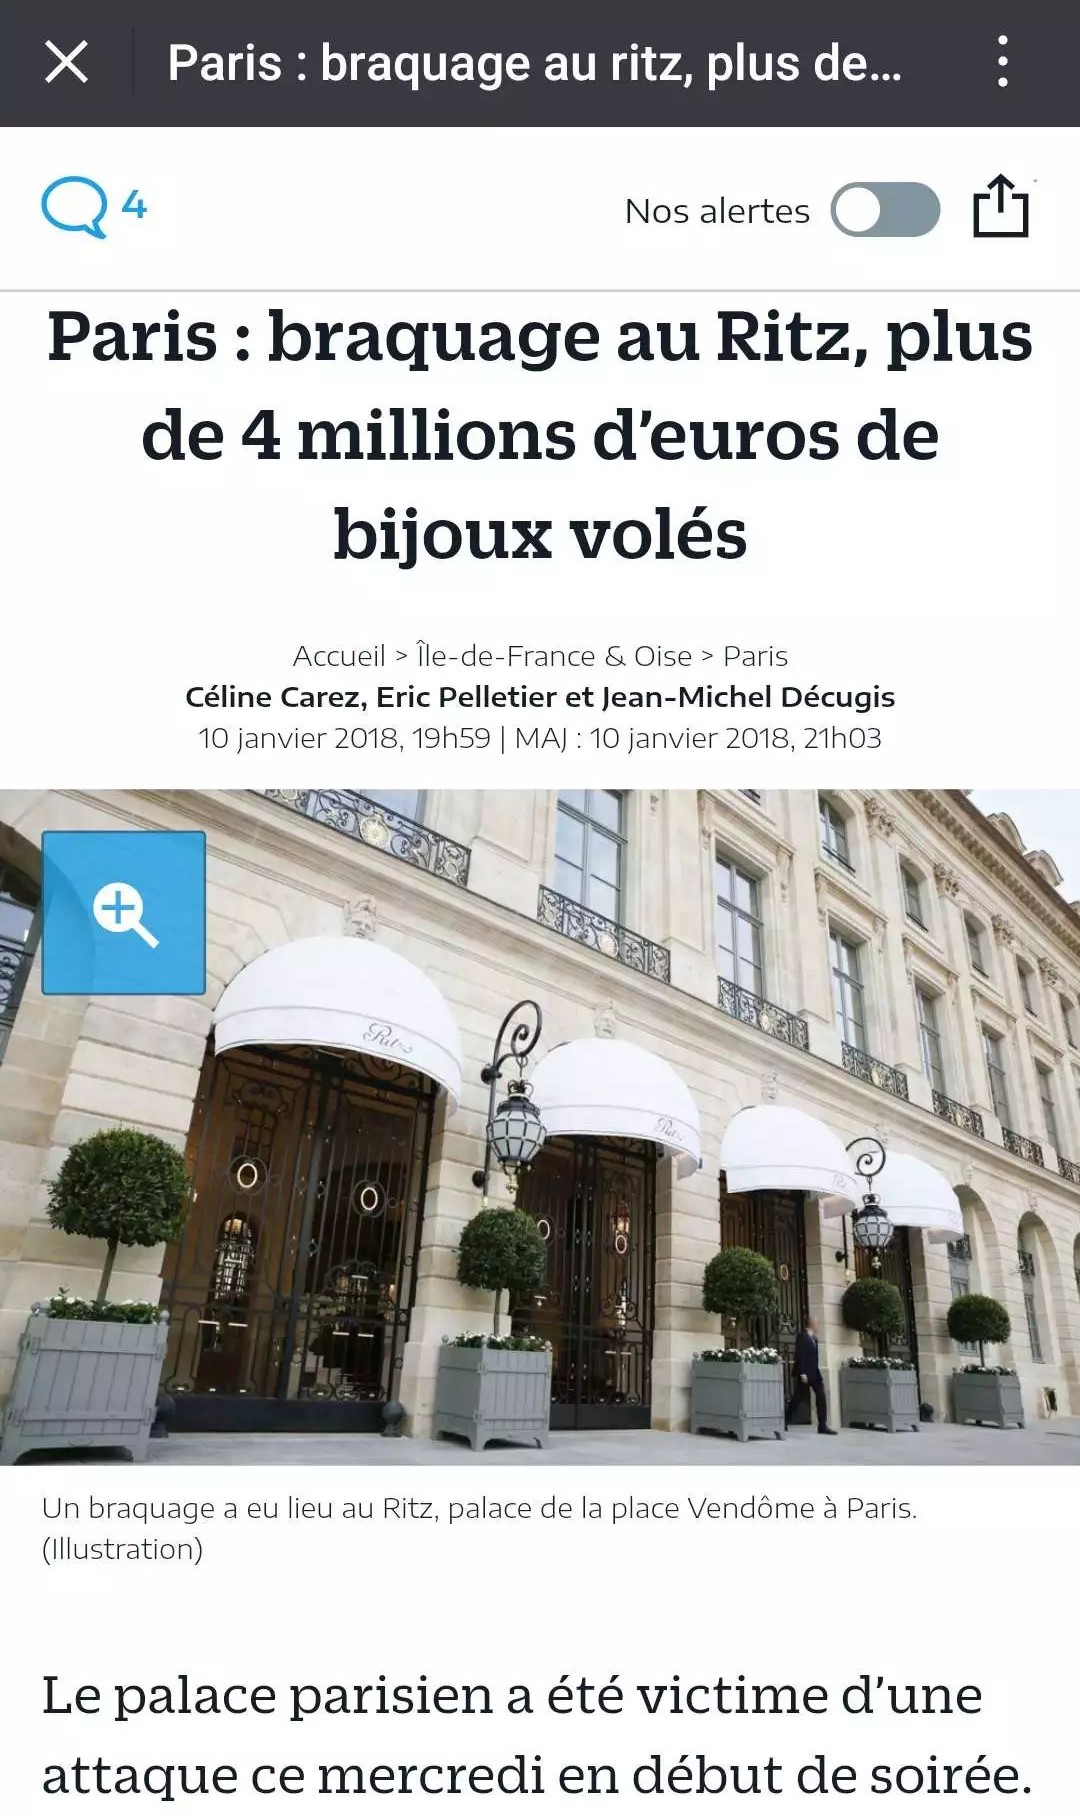 巴黎丽兹酒店珠宝店被盗损失约450万欧元!